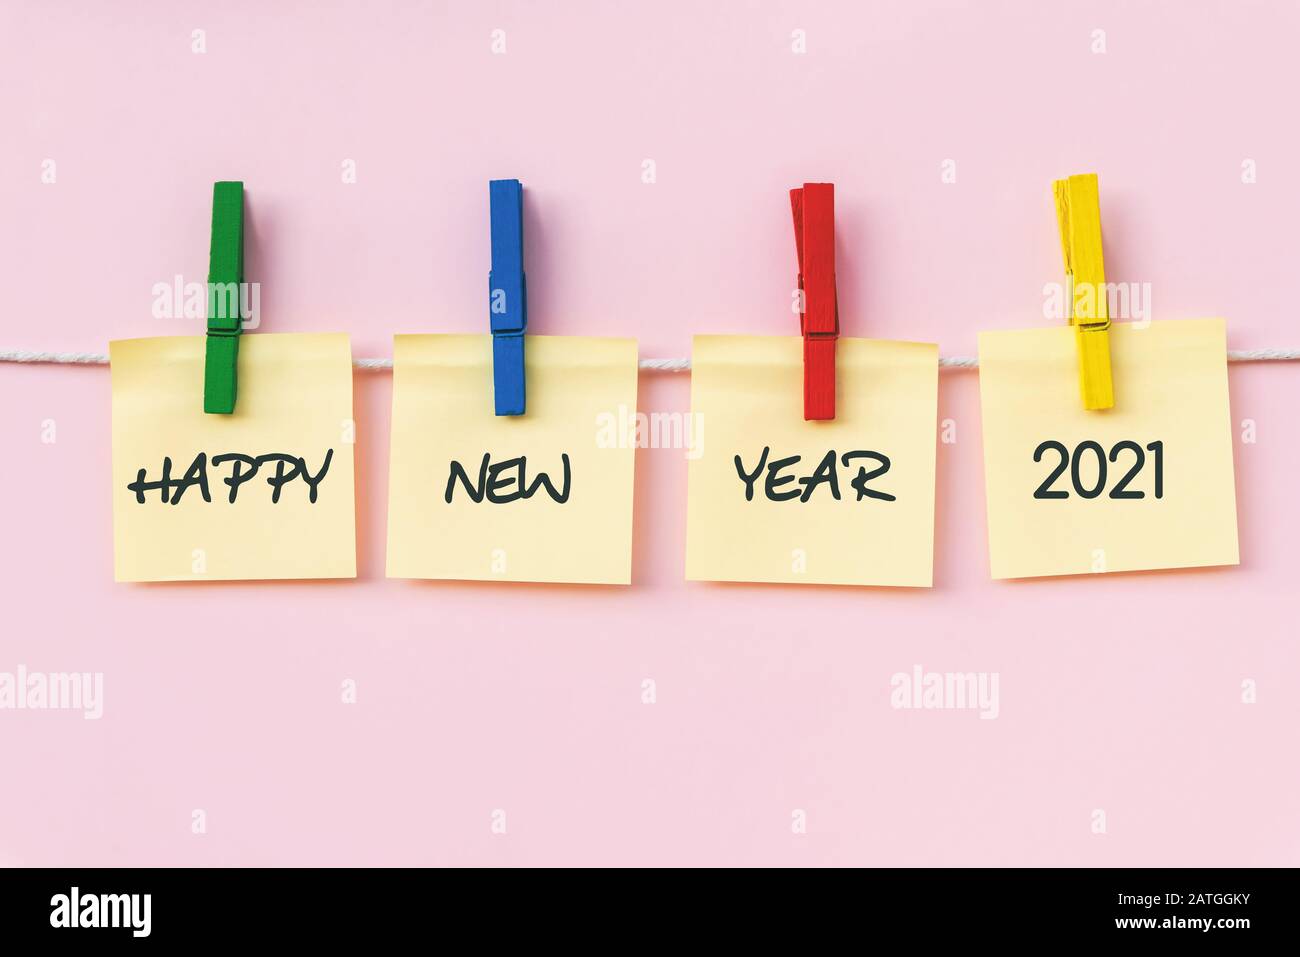 Bonne année 2021 salutation sur papier d'affichage note, fond rose. Concept de nouvelle année. Banque D'Images